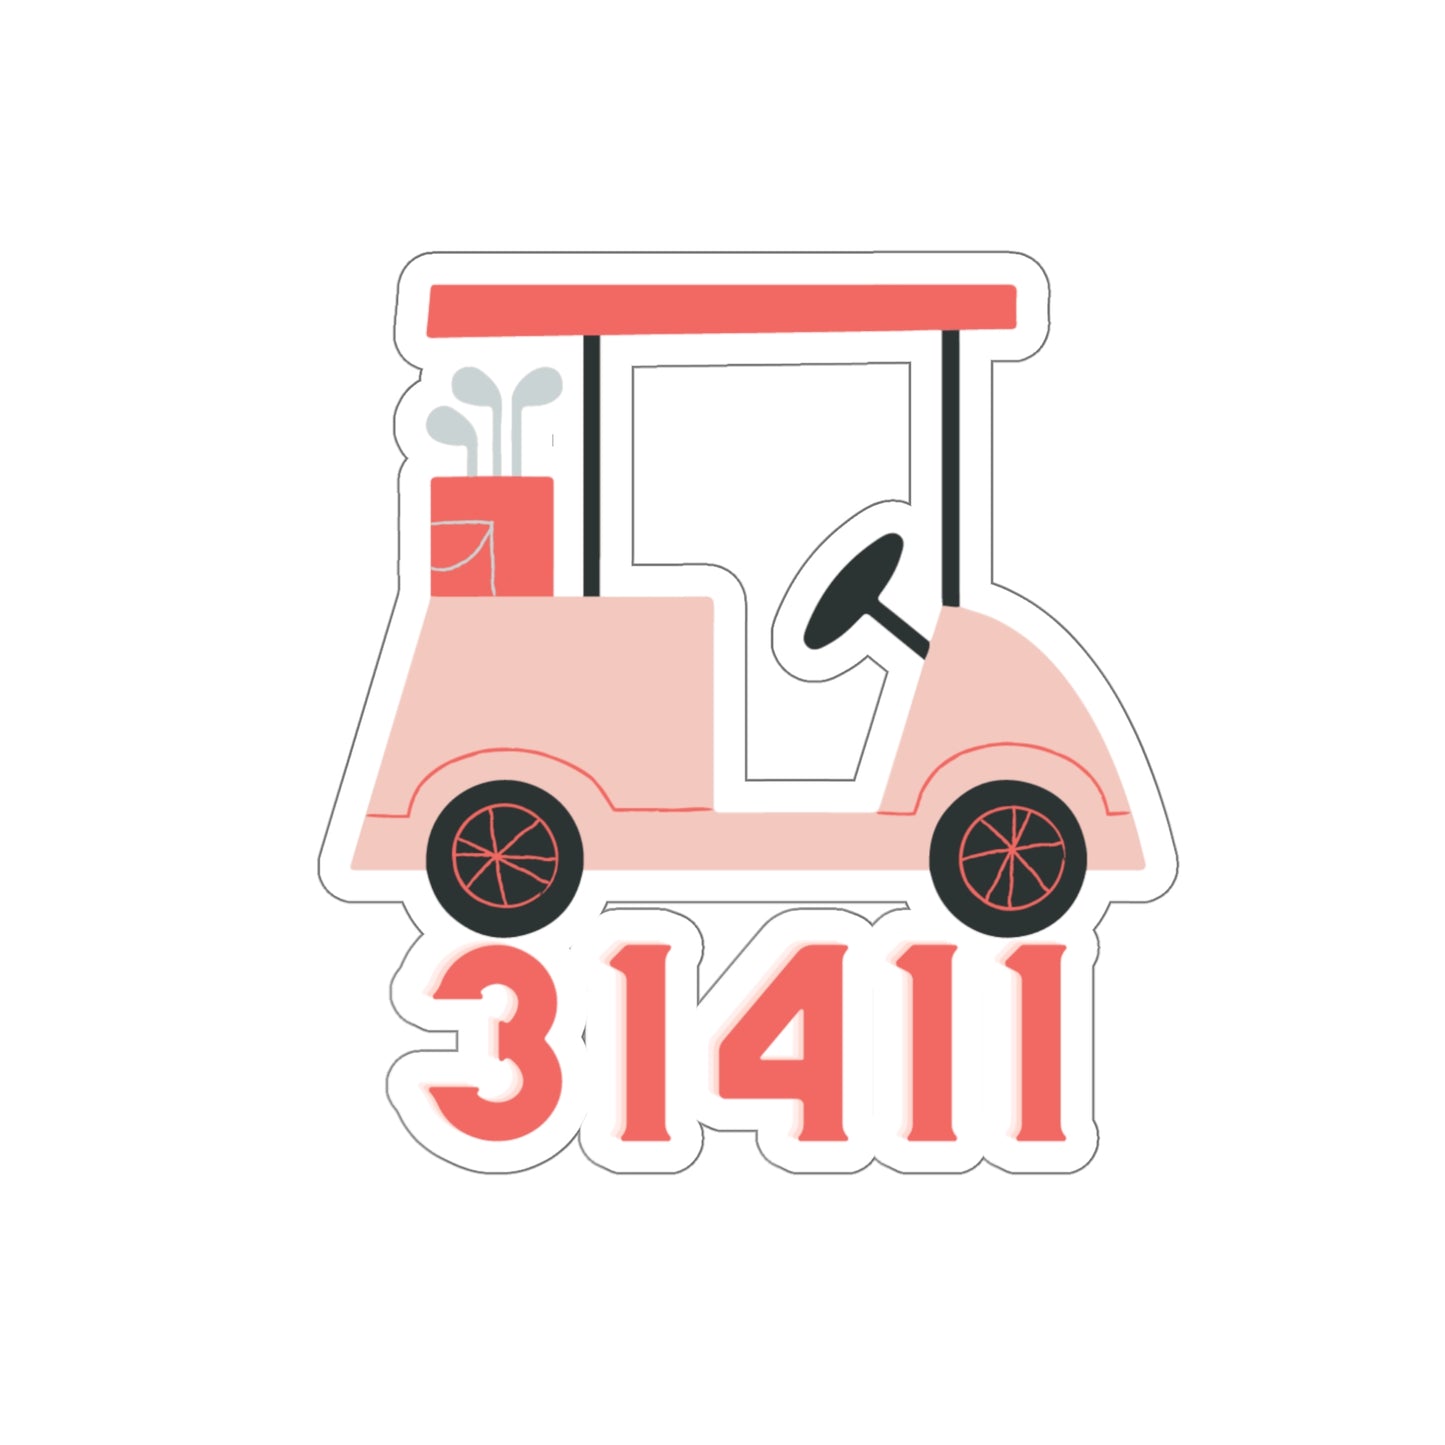 31411 Sticker